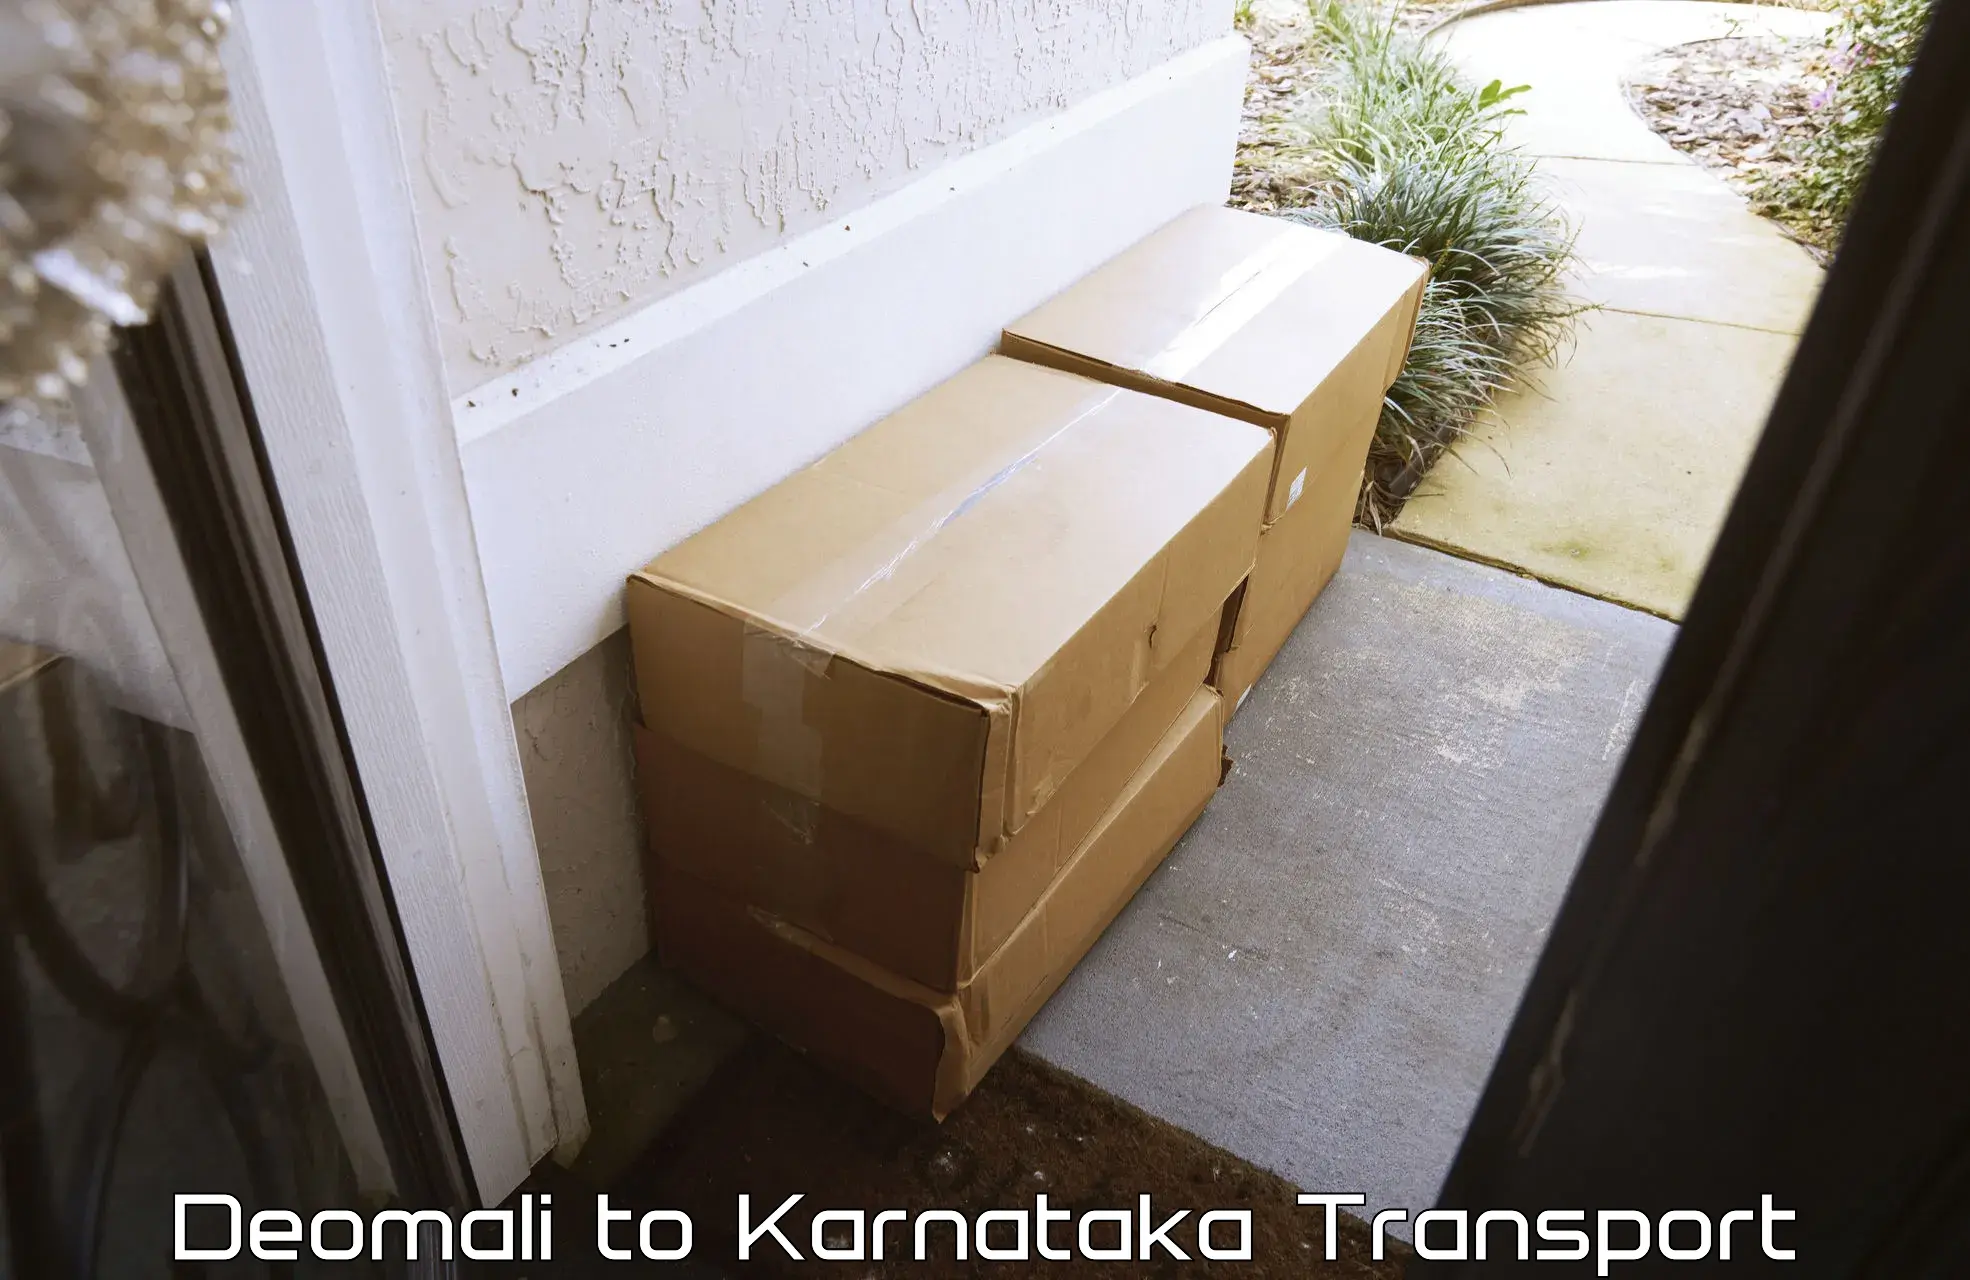 Online transport booking Deomali to Karnataka